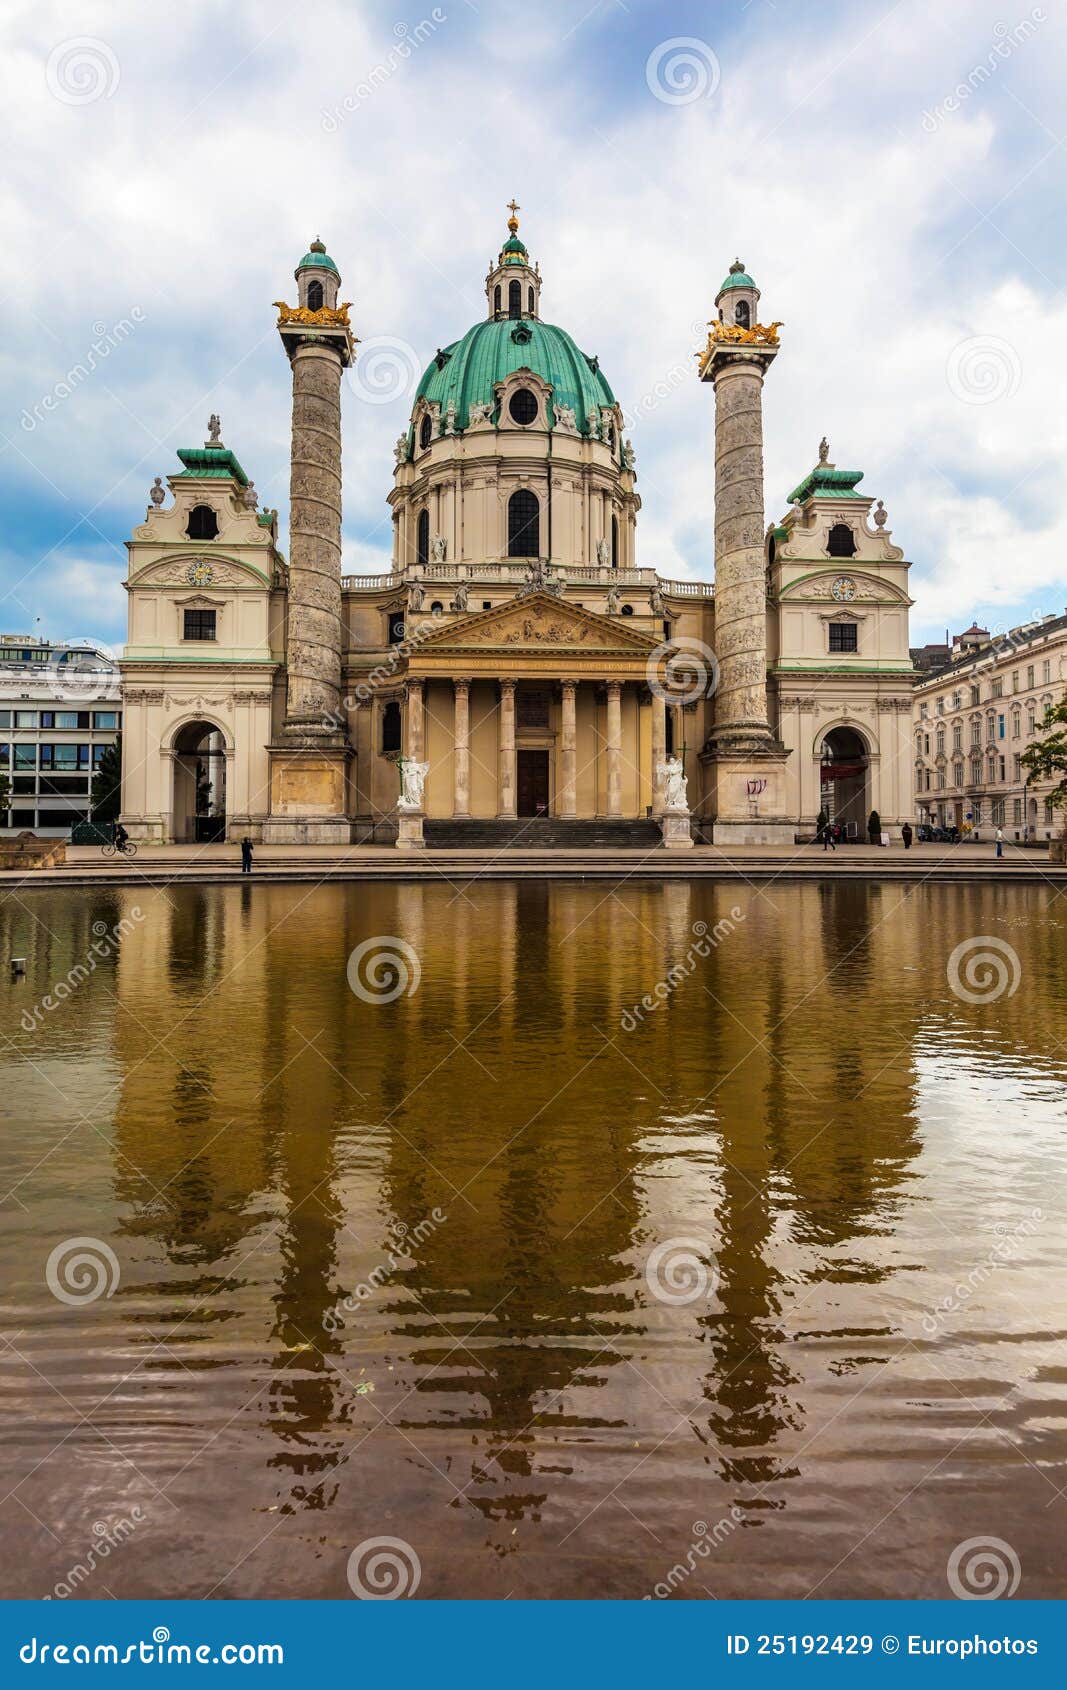 Kirche Str.-Charless (Karlskirche) in Wien, Österreich